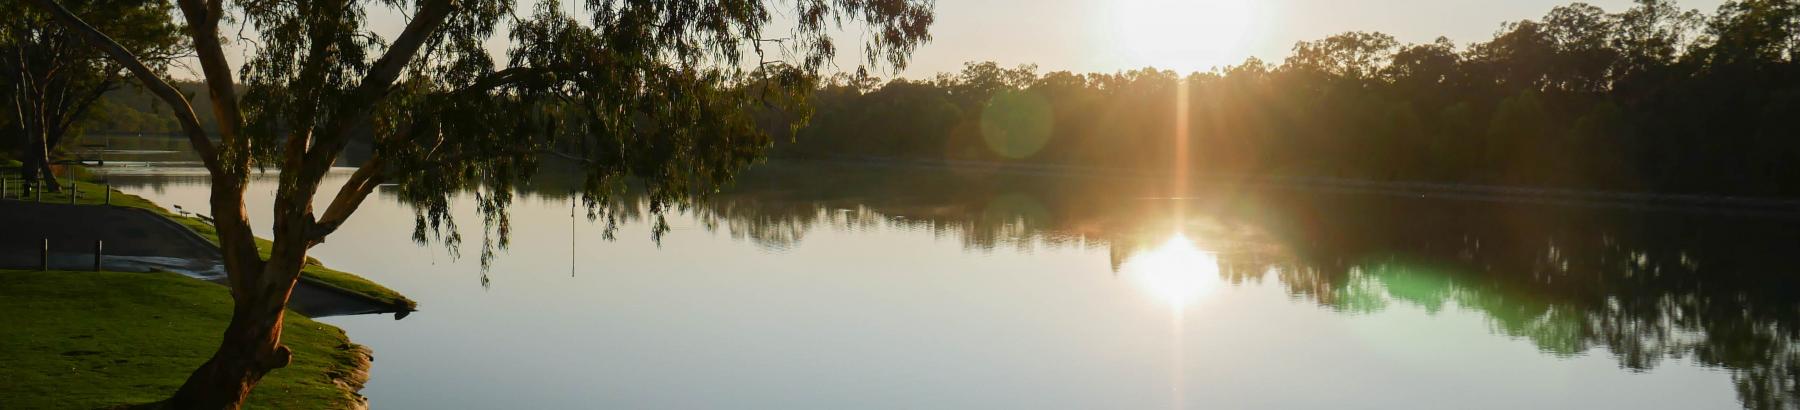 Narrandera's Lake Talbot, image by Jake Semmler